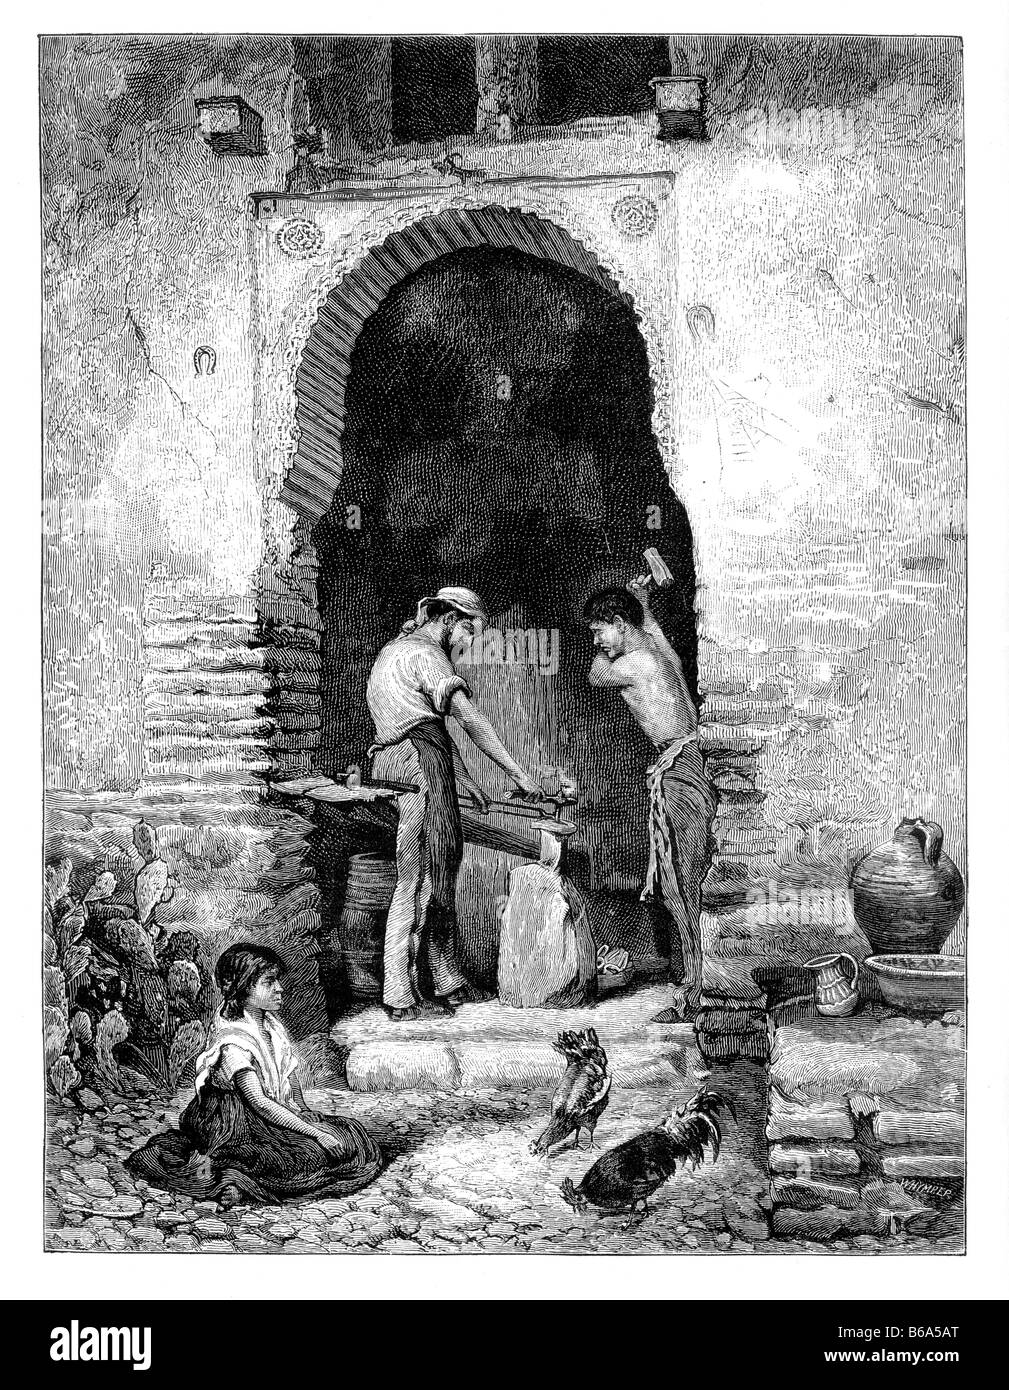 S-Schmiede in Granada Spanien des 19. Jahrhunderts Abbildung Stockfoto